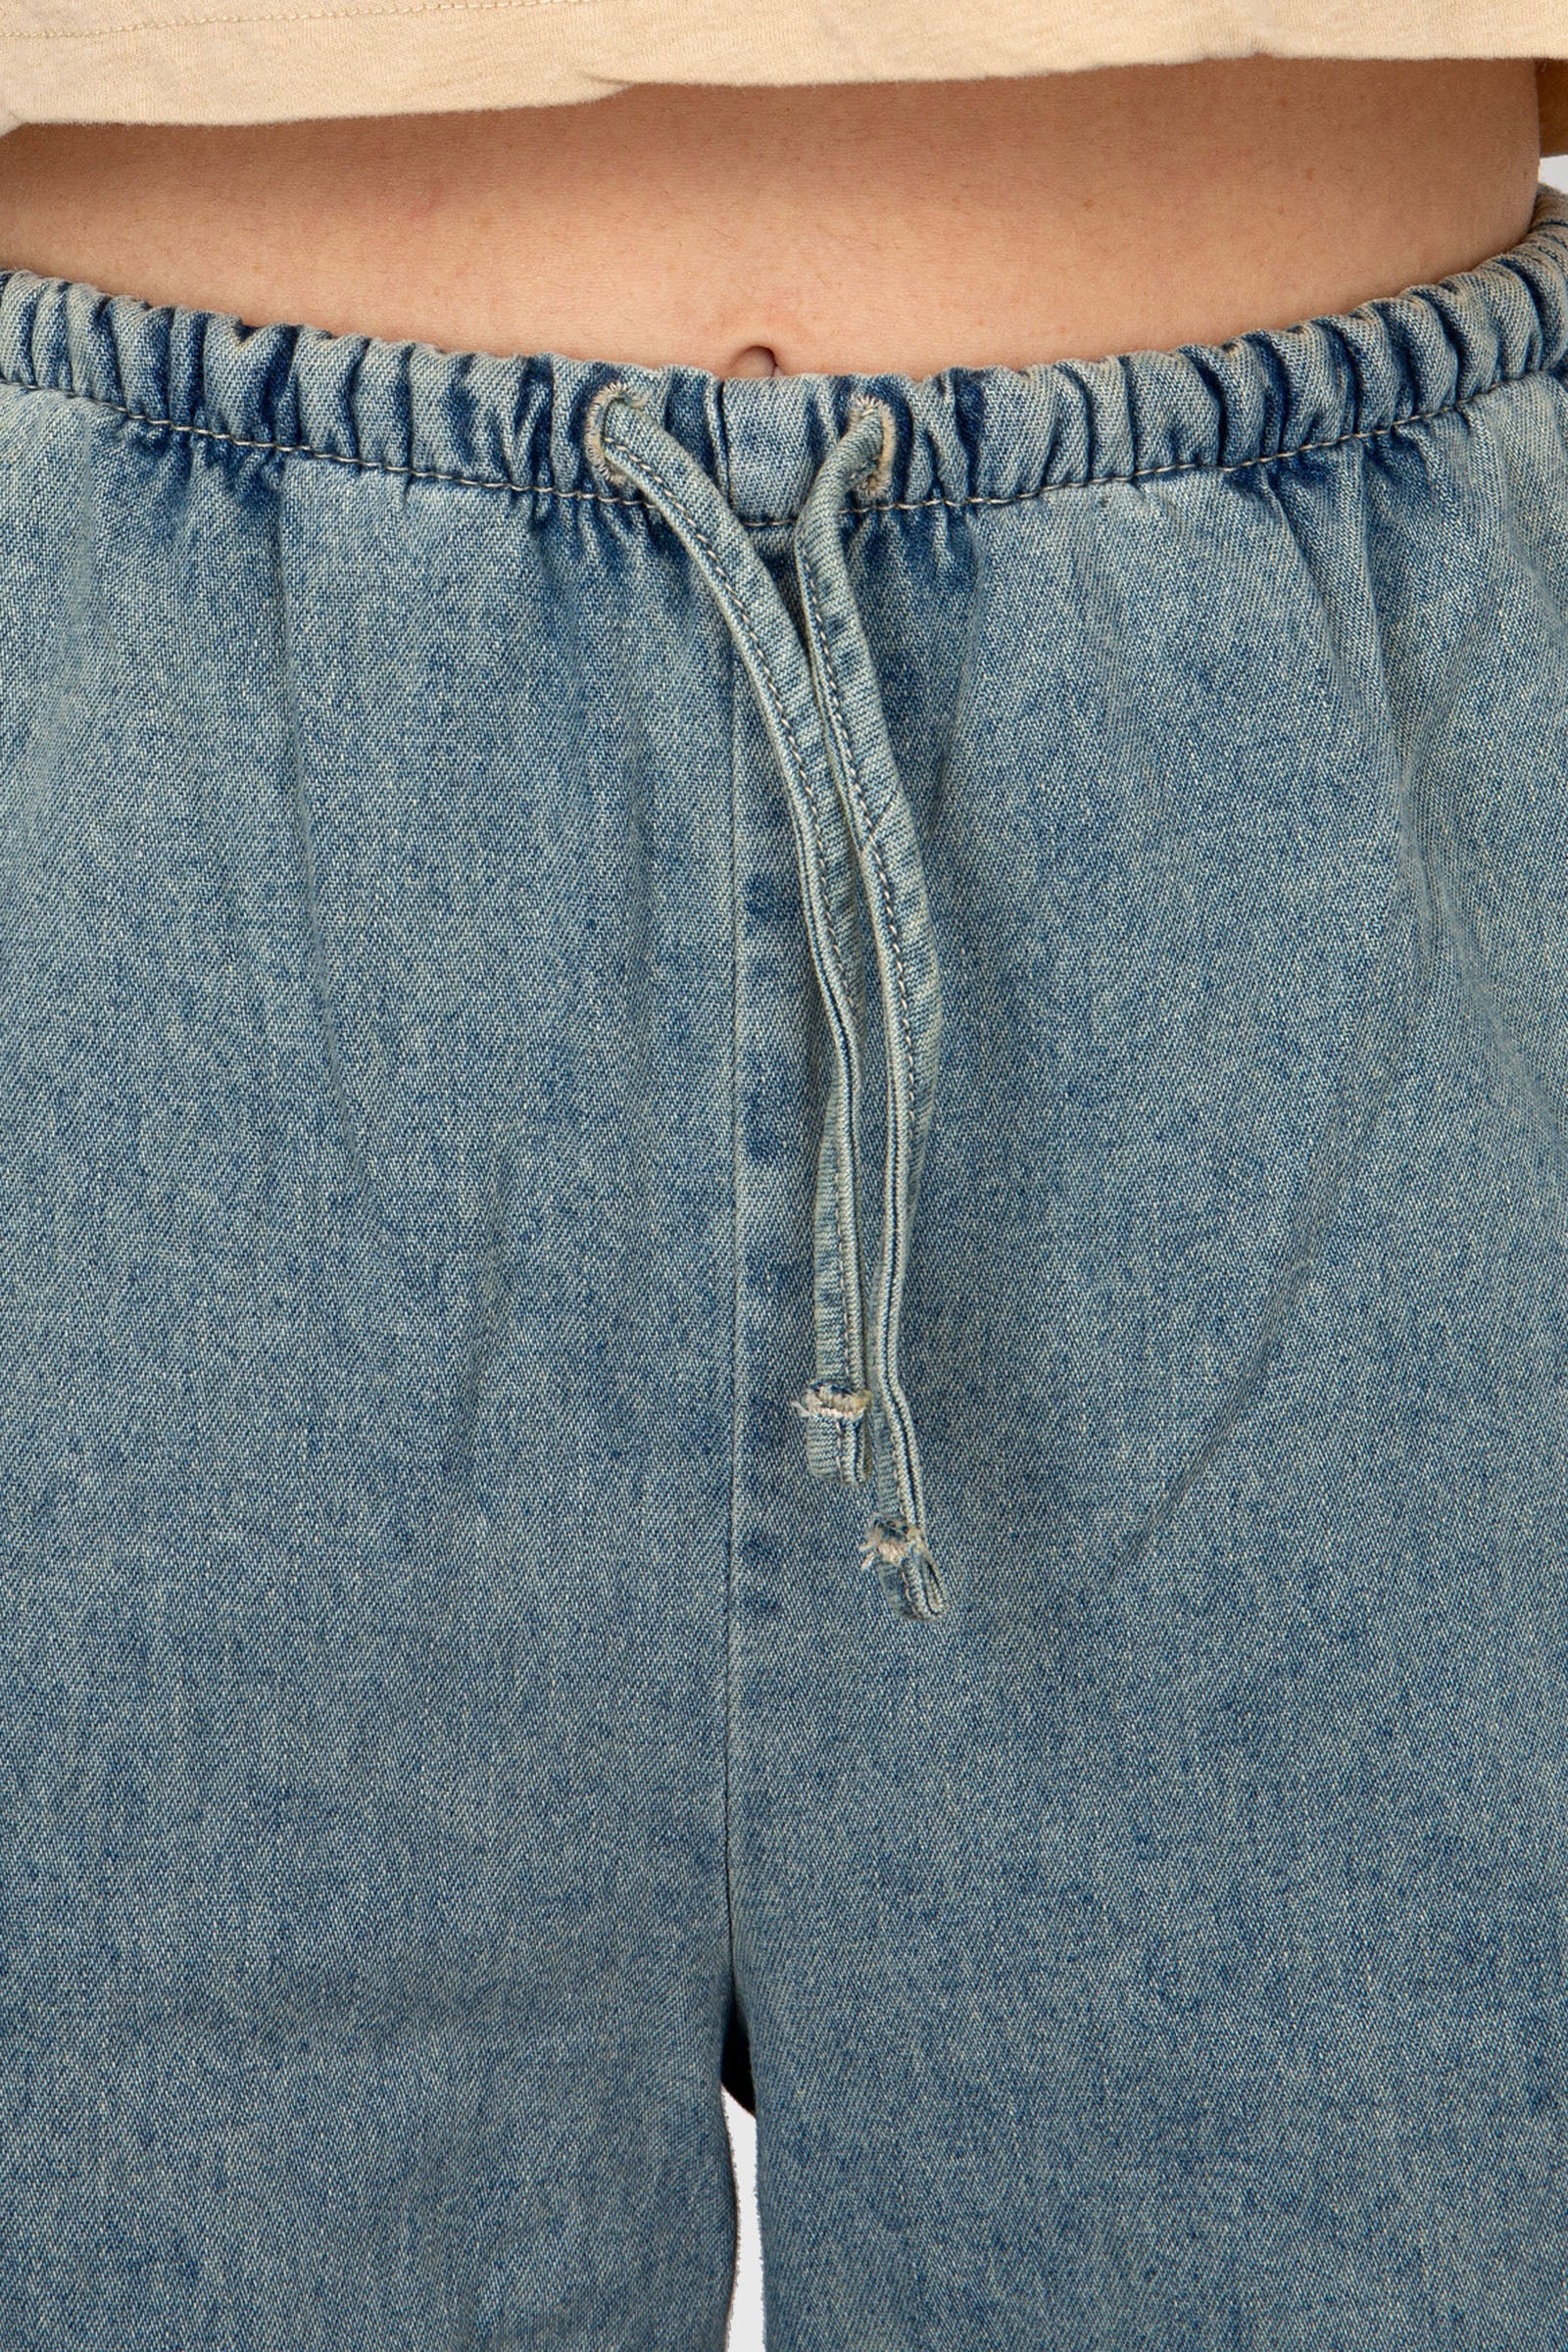 American Vintage Jeans Besobay Light Blue Denim - 5